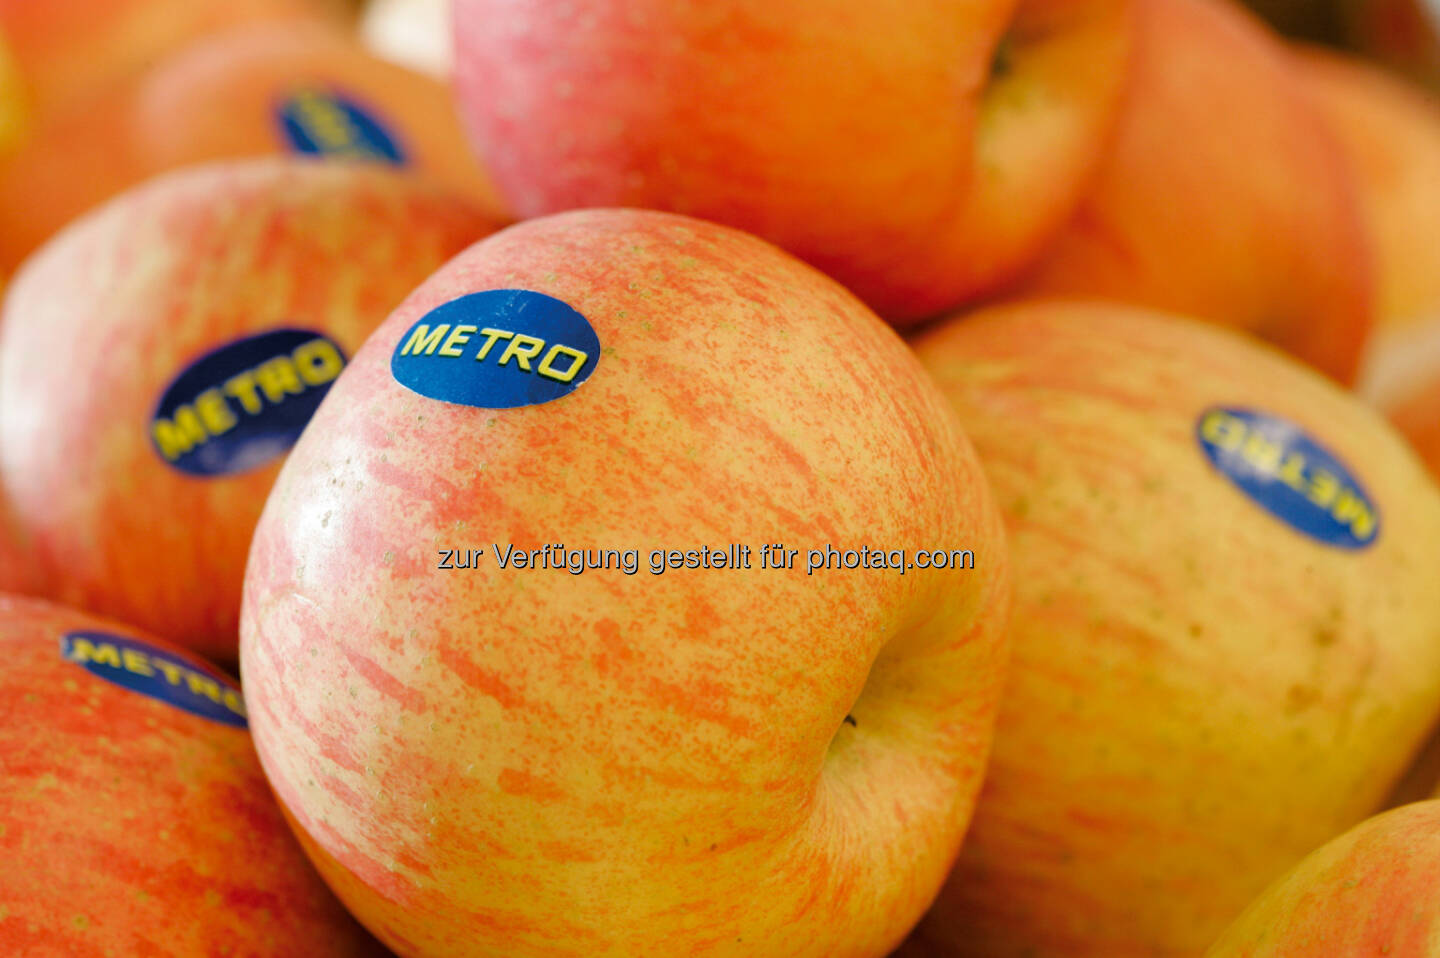 Metro begeht den Tag des Apfels - am 14.11. bekommt jeder Kunde einen Apfel geschenkt - 3,5 Tonnen Äpfel werden für diese Aktion gekauft - Metro unterstützt damit die heimischen Bauern (Bild: Metro)